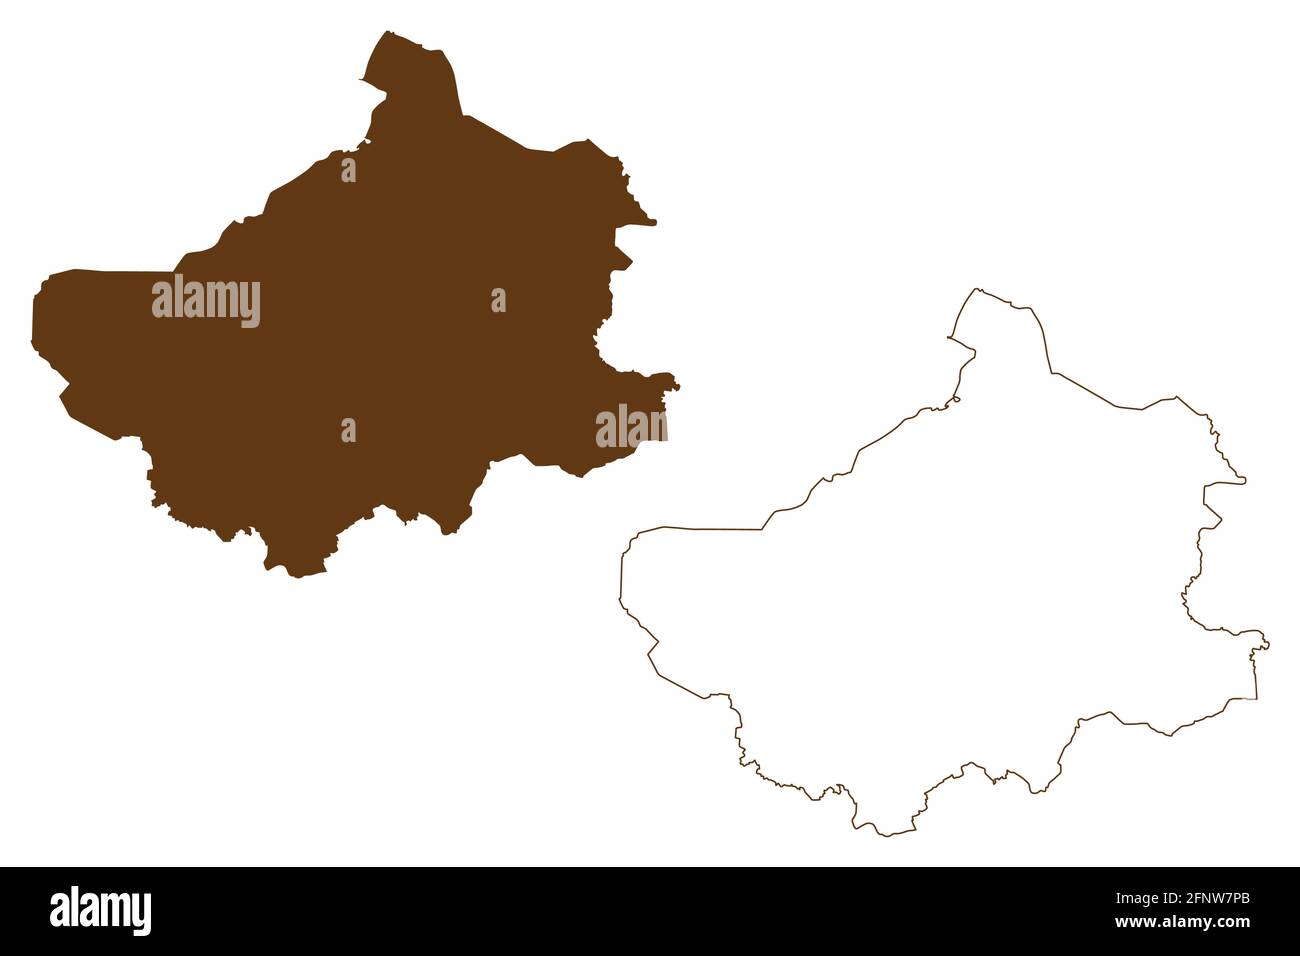 Landkreis Steinfurt (Bundesrepublik Deutschland, Land Nordrhein-Westfalen, NRW, Munster) Kartenvektordarstellung, Scribble-Skizze Steinf Stock Vektor